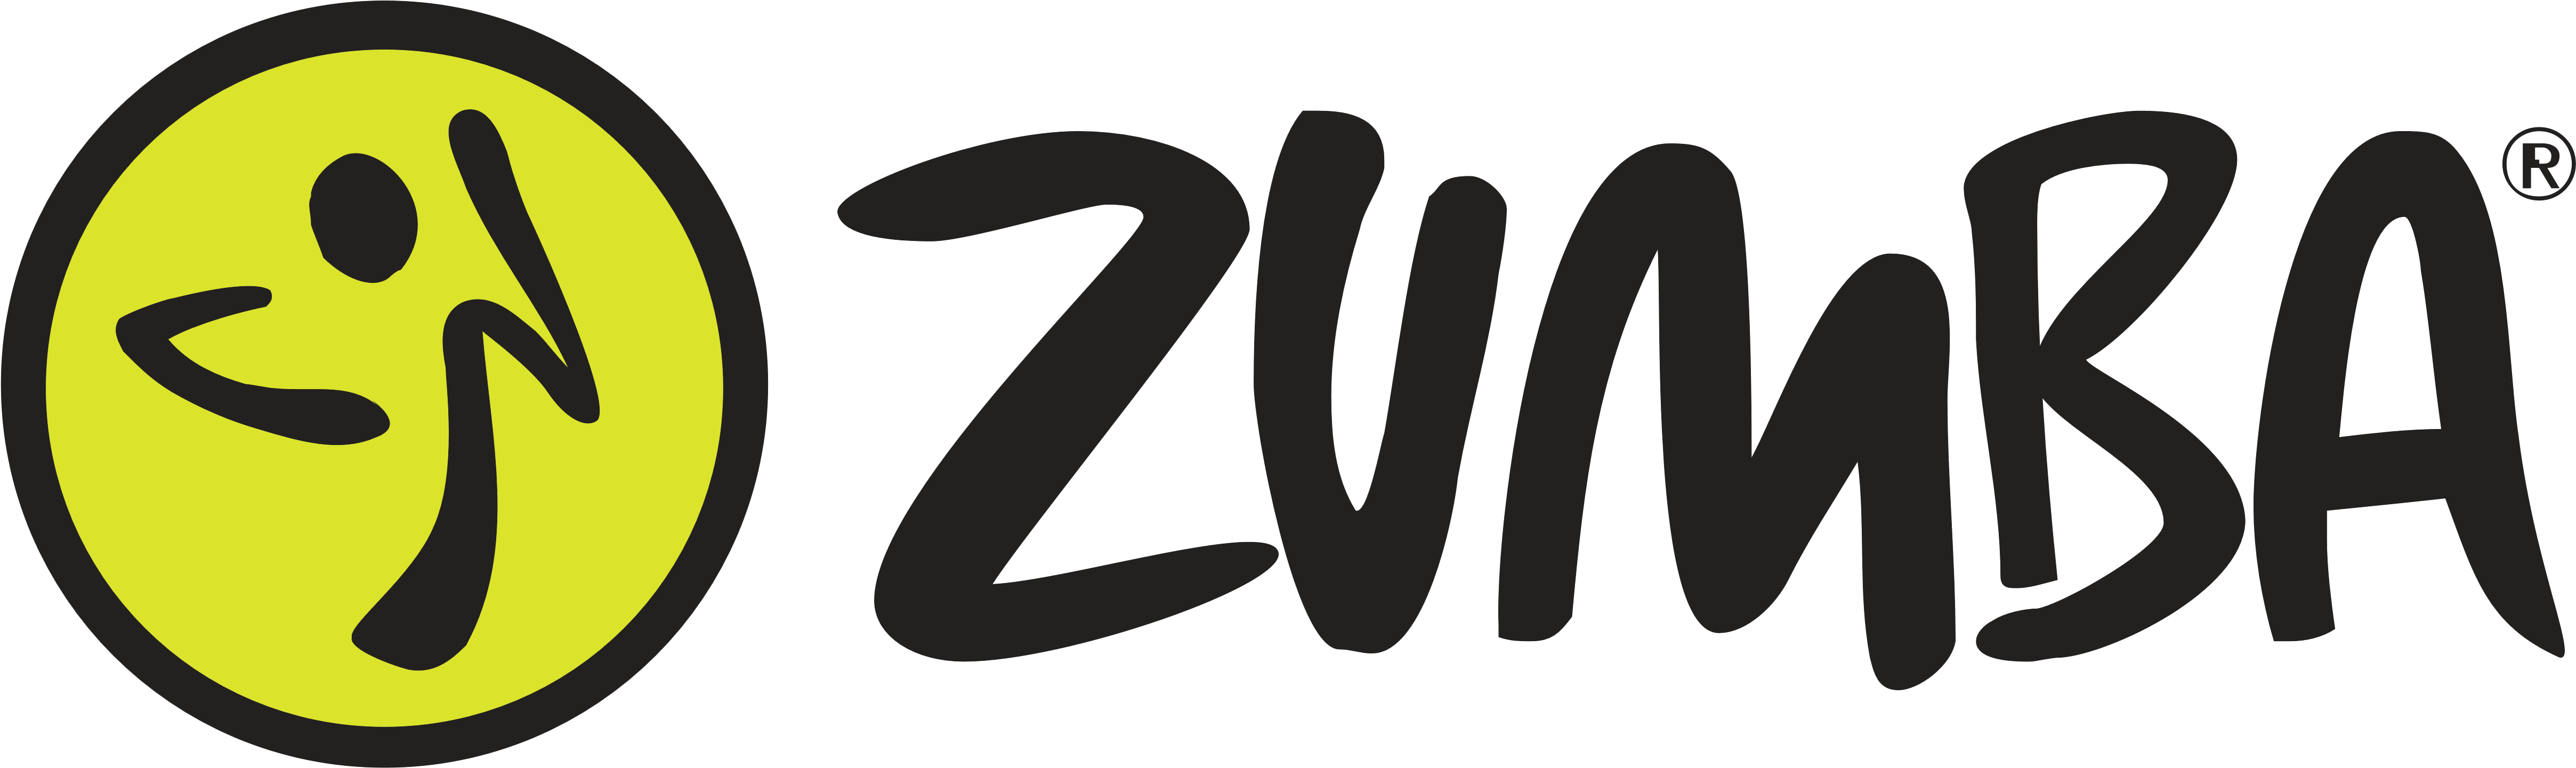 Shining Zumba Logo Images Fitness Logos Download - Logo De Zumba Png (5000x1495)